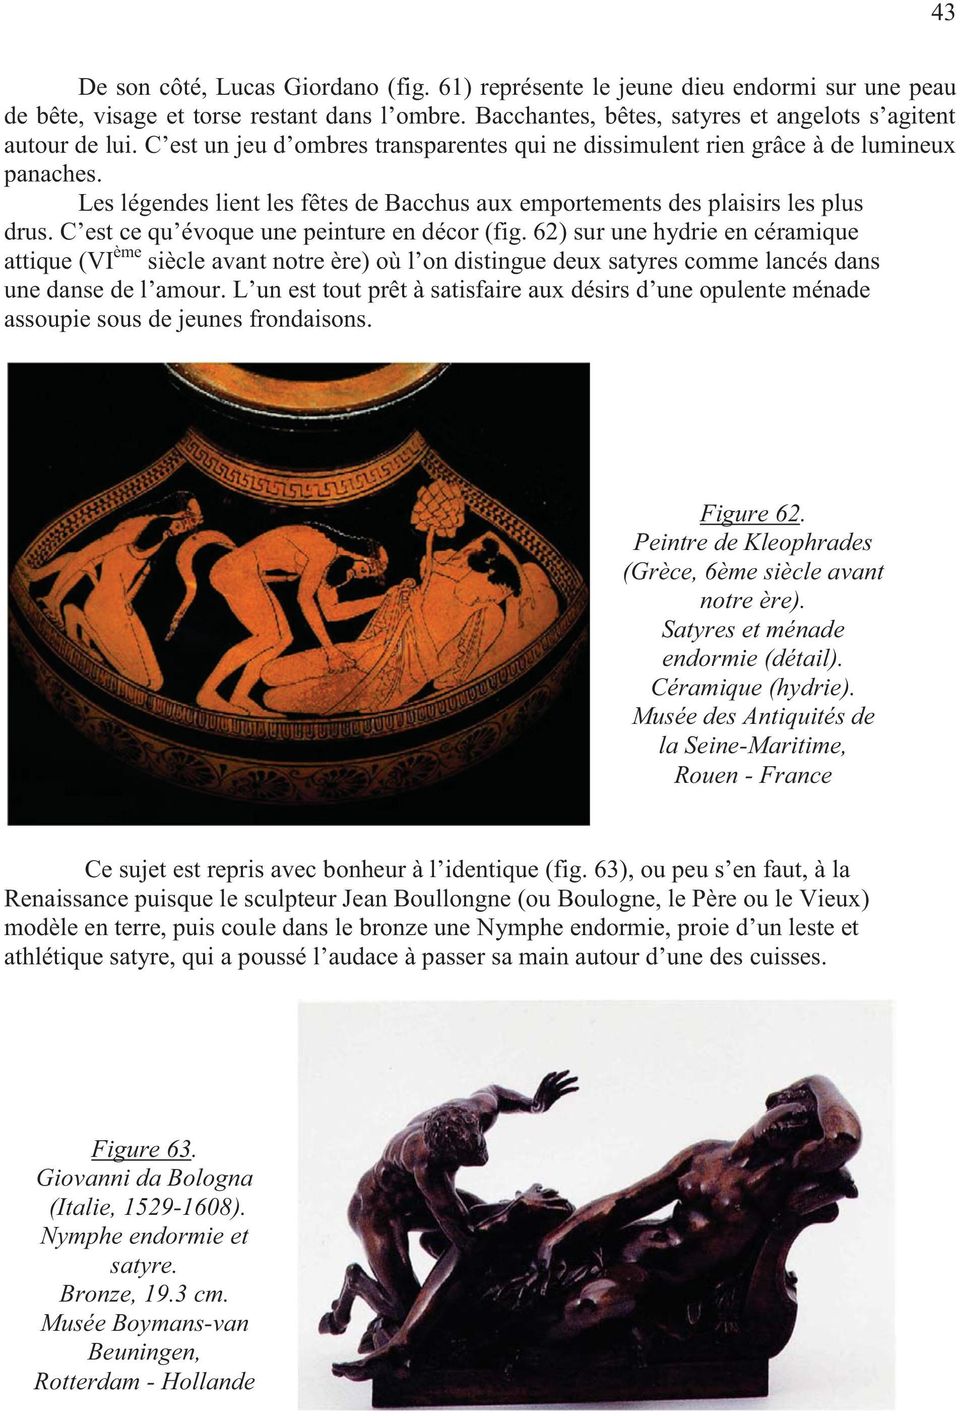 C est ce qu évoque une peinture en décor (fig. 62) sur une hydrie en céramique attique (VI ème siècle avant notre ère) où l on distingue deux satyres comme lancés dans une danse de l amour.